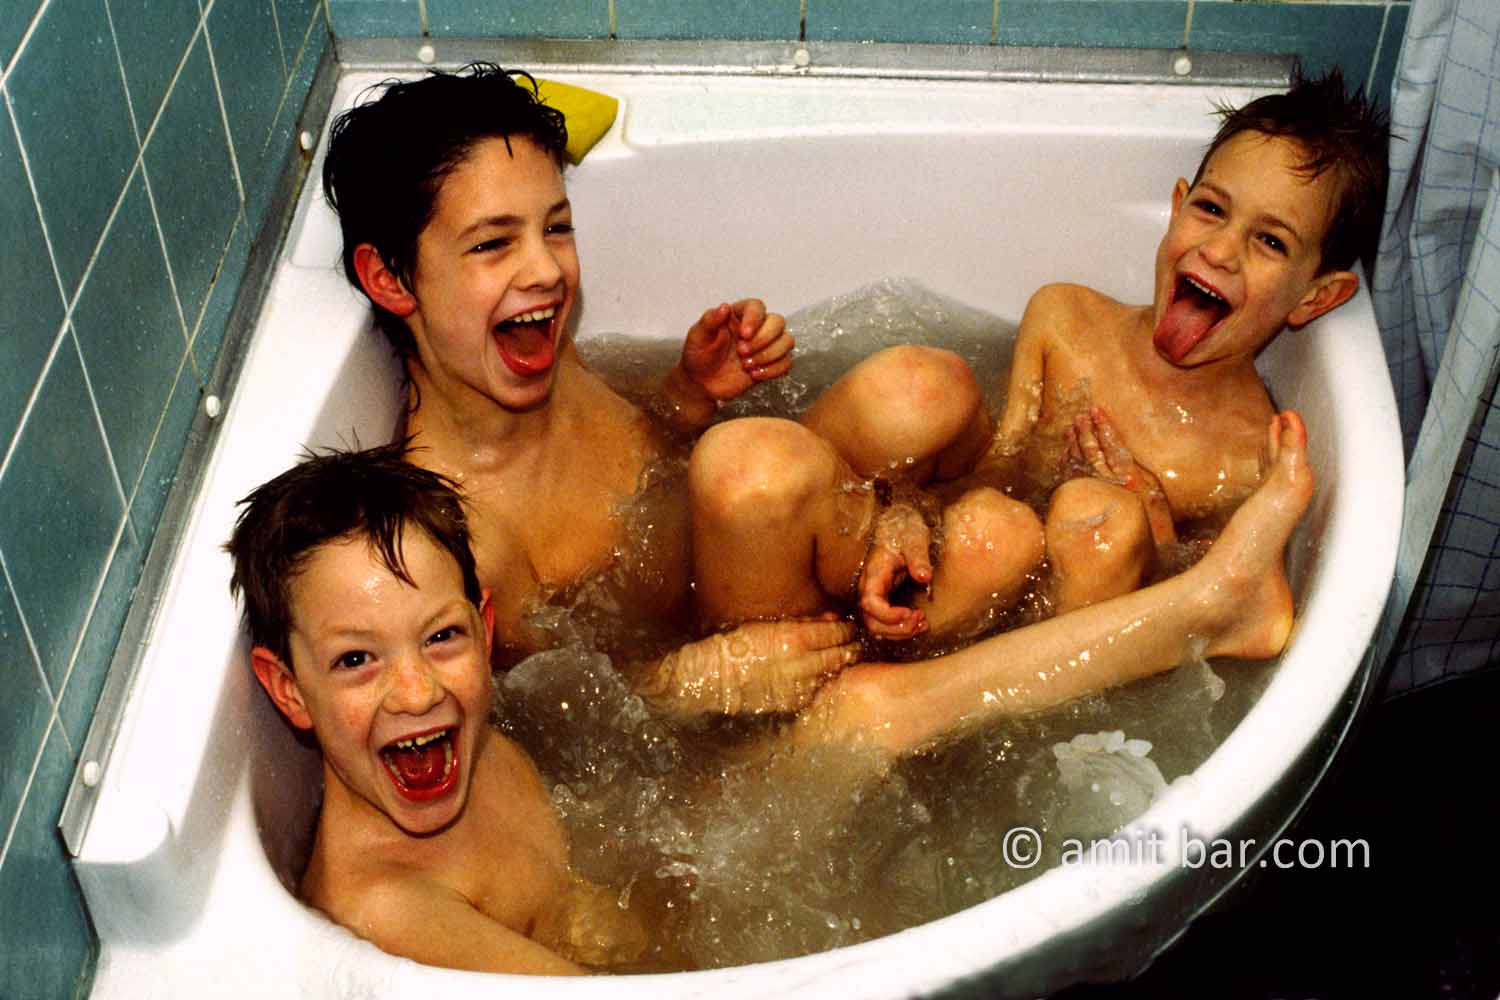 Wow!: Three boys in a corner bath